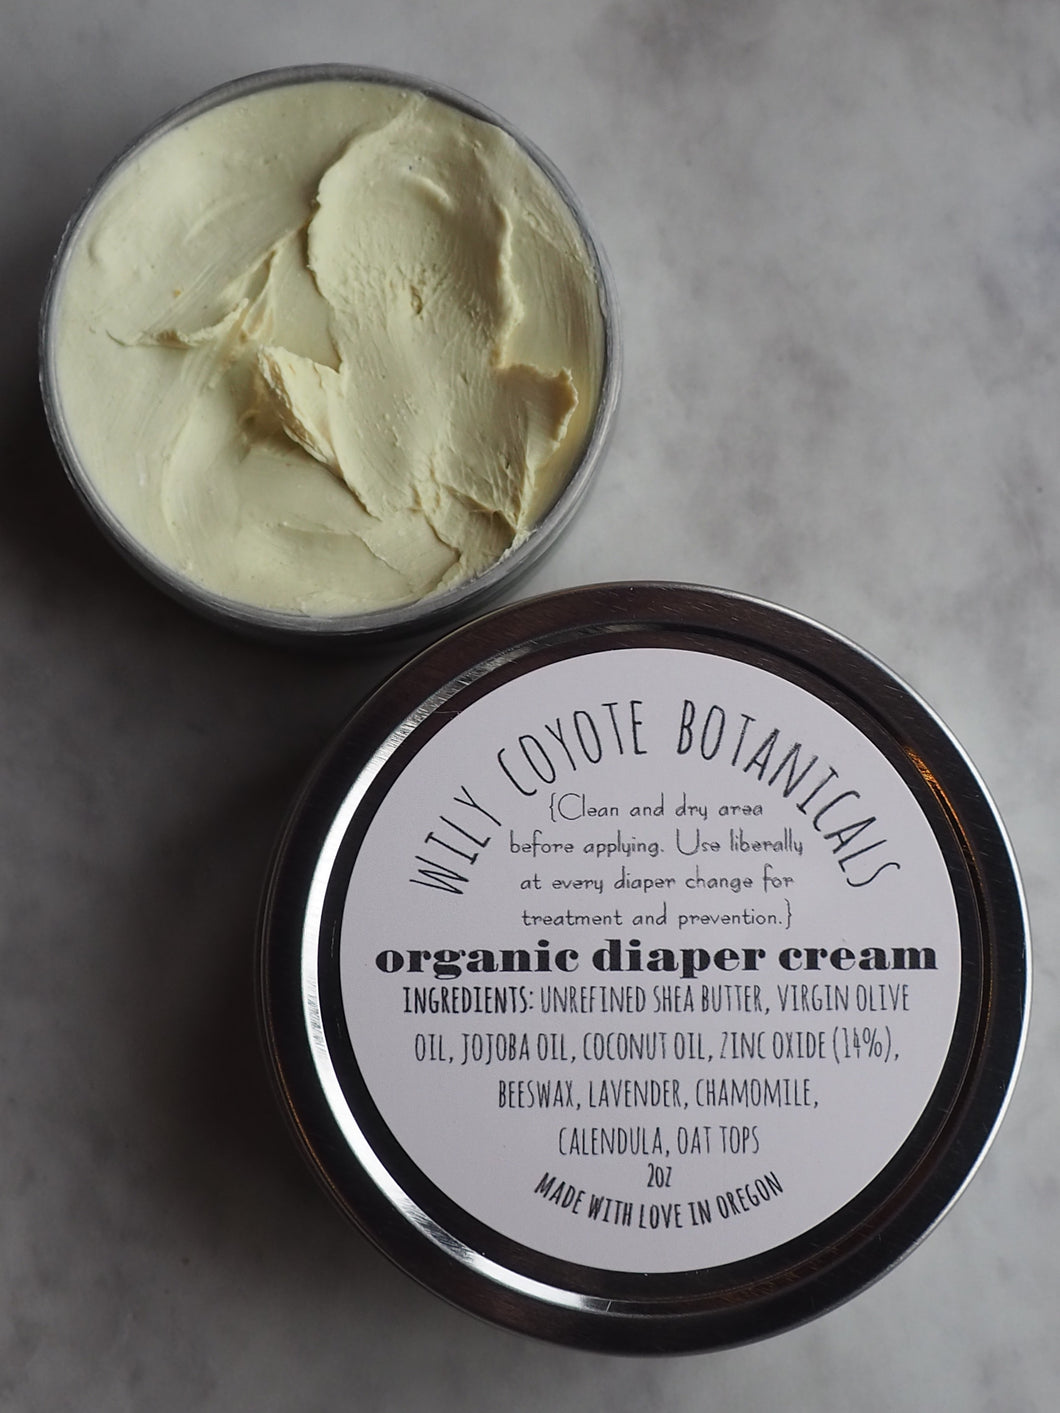 Organic Diaper Cream